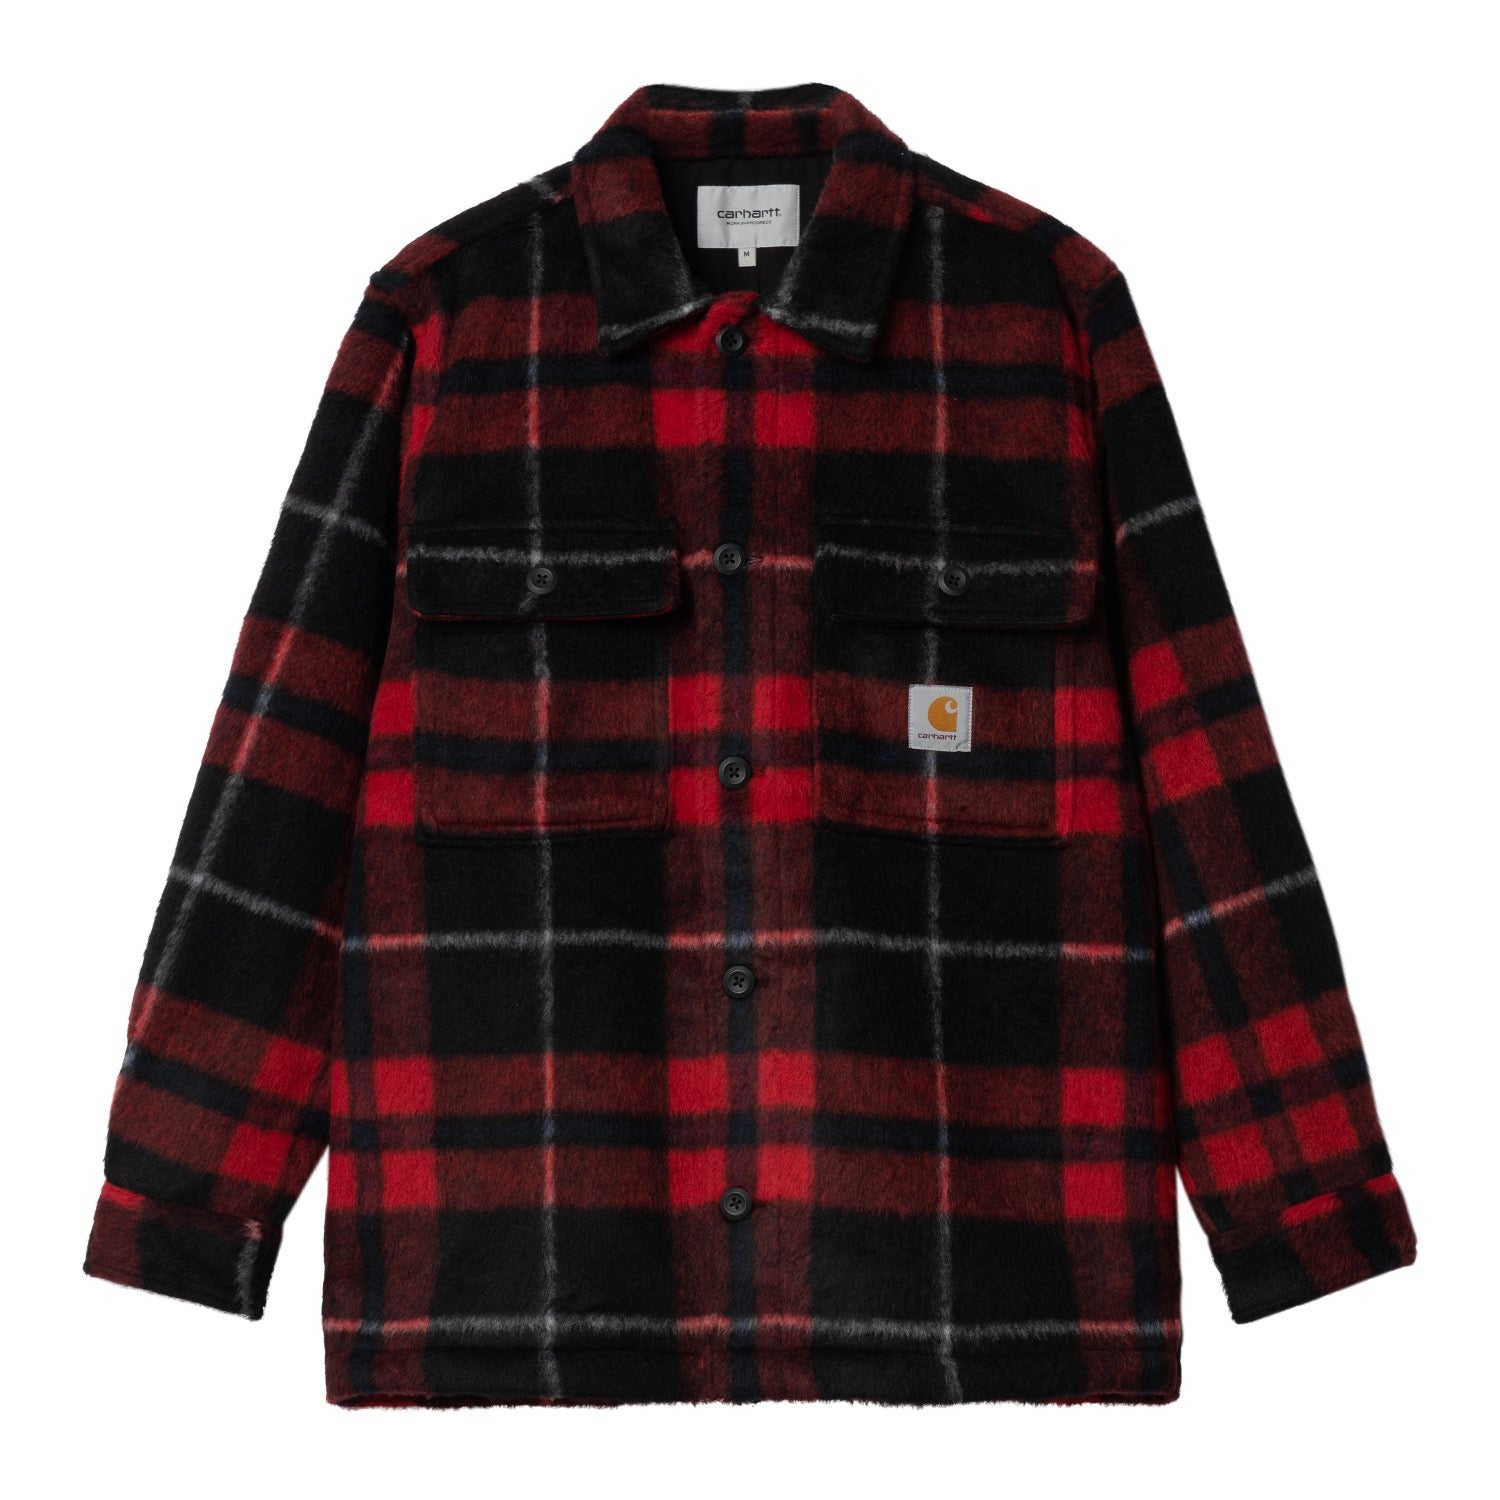 マンニングシャツジャケット | カーハート公式通販 - Carhartt WIP